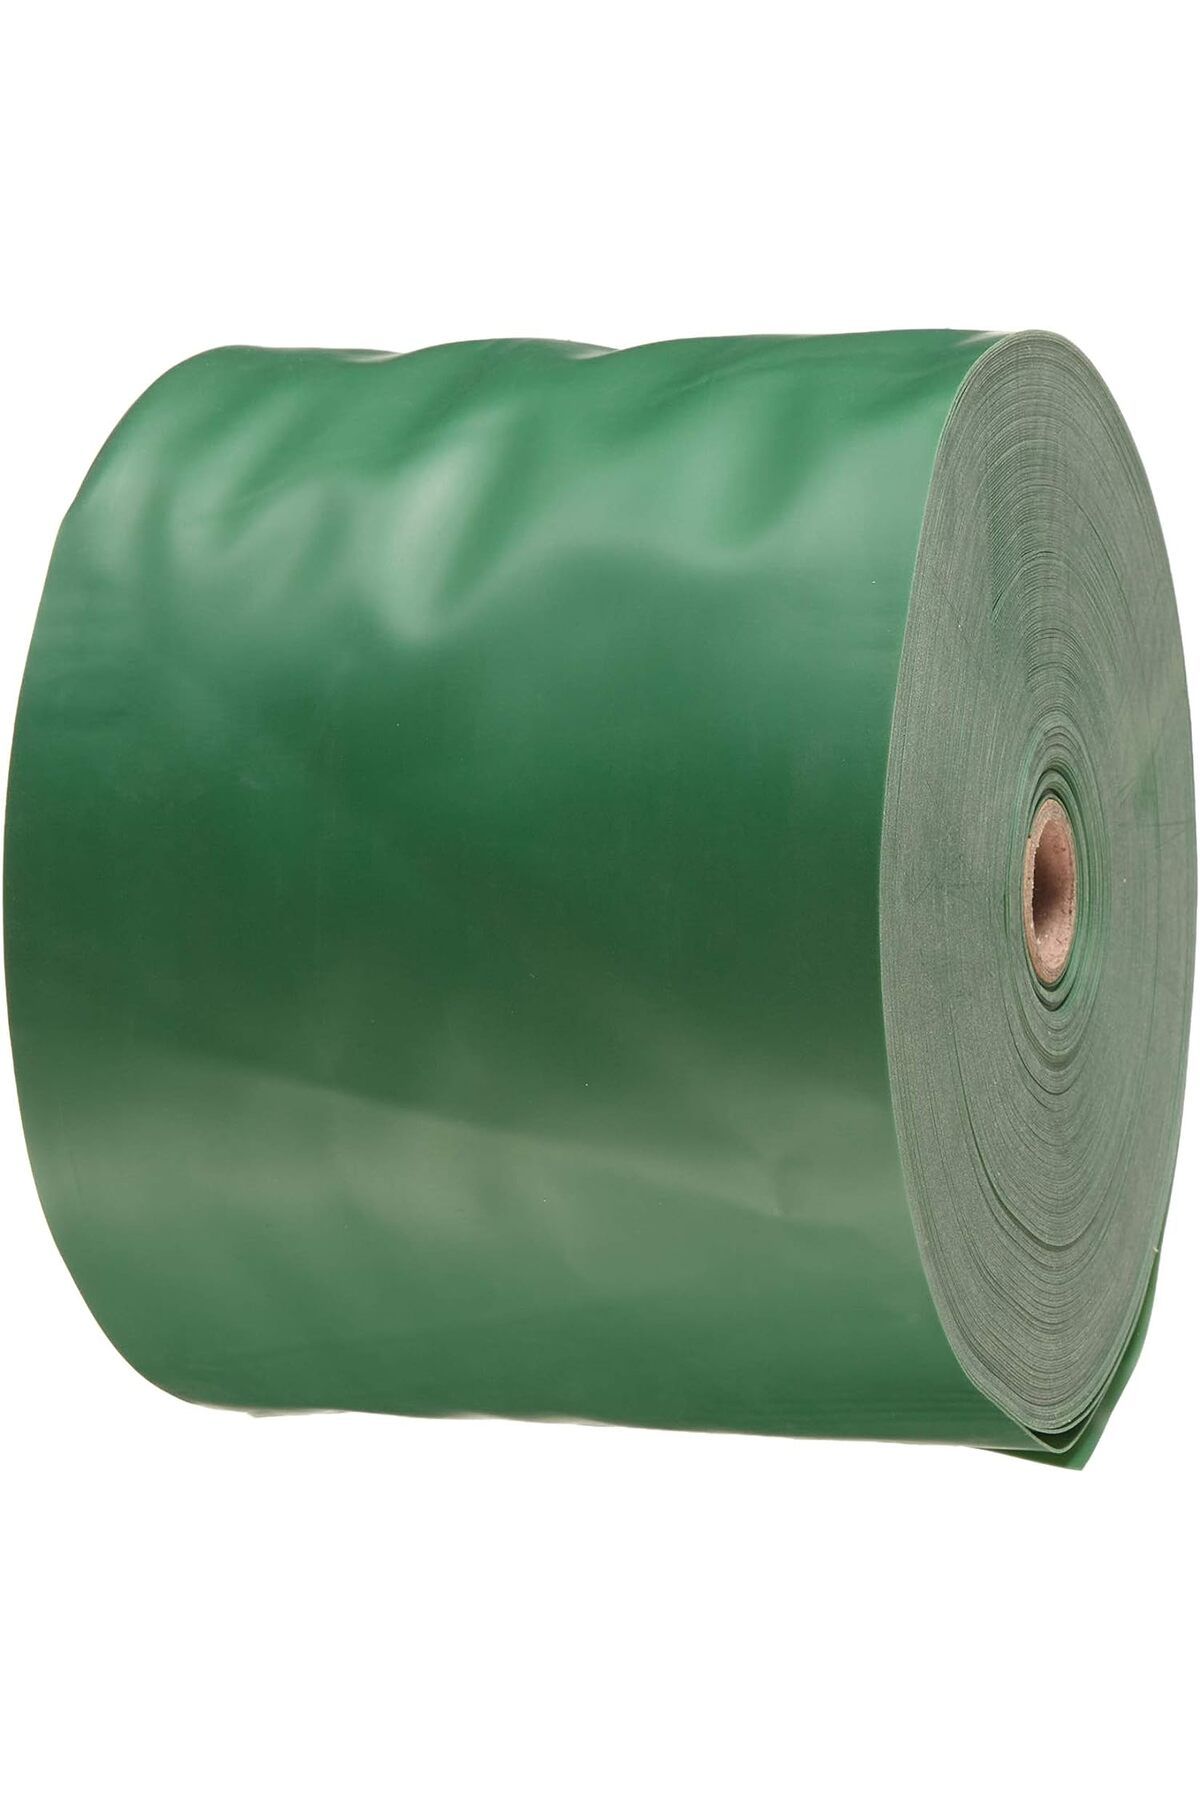 Genel Markalar Rulo Pilates Bandı Egzersiz Lastiği,Yeşil,4500 X 15 Cm,Tam